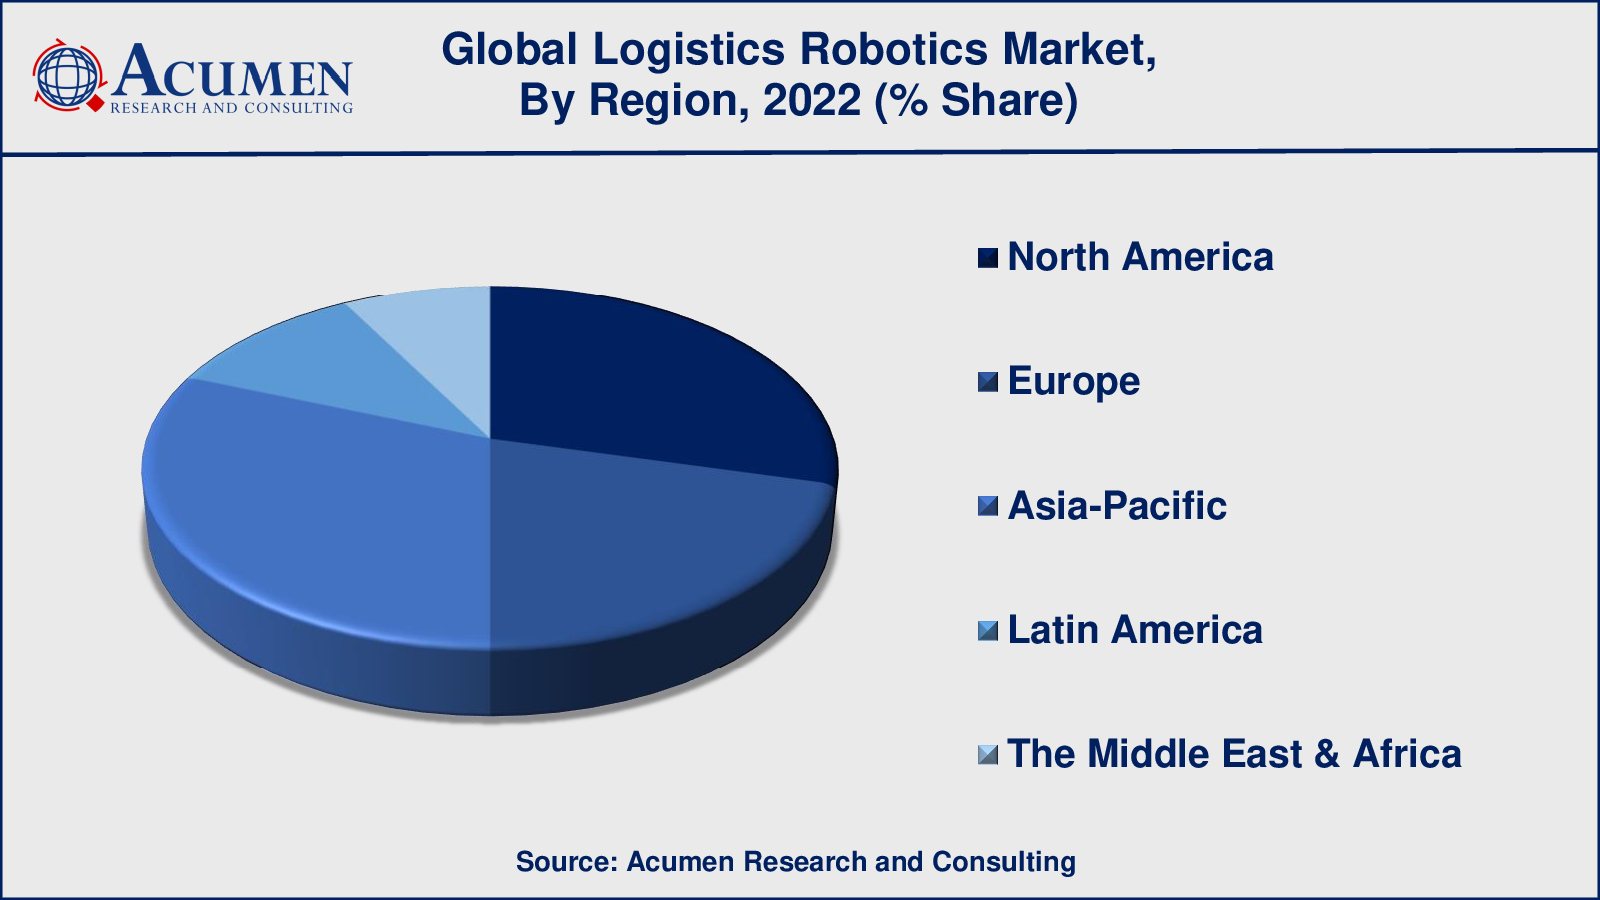 Logistics Robotics Market Share